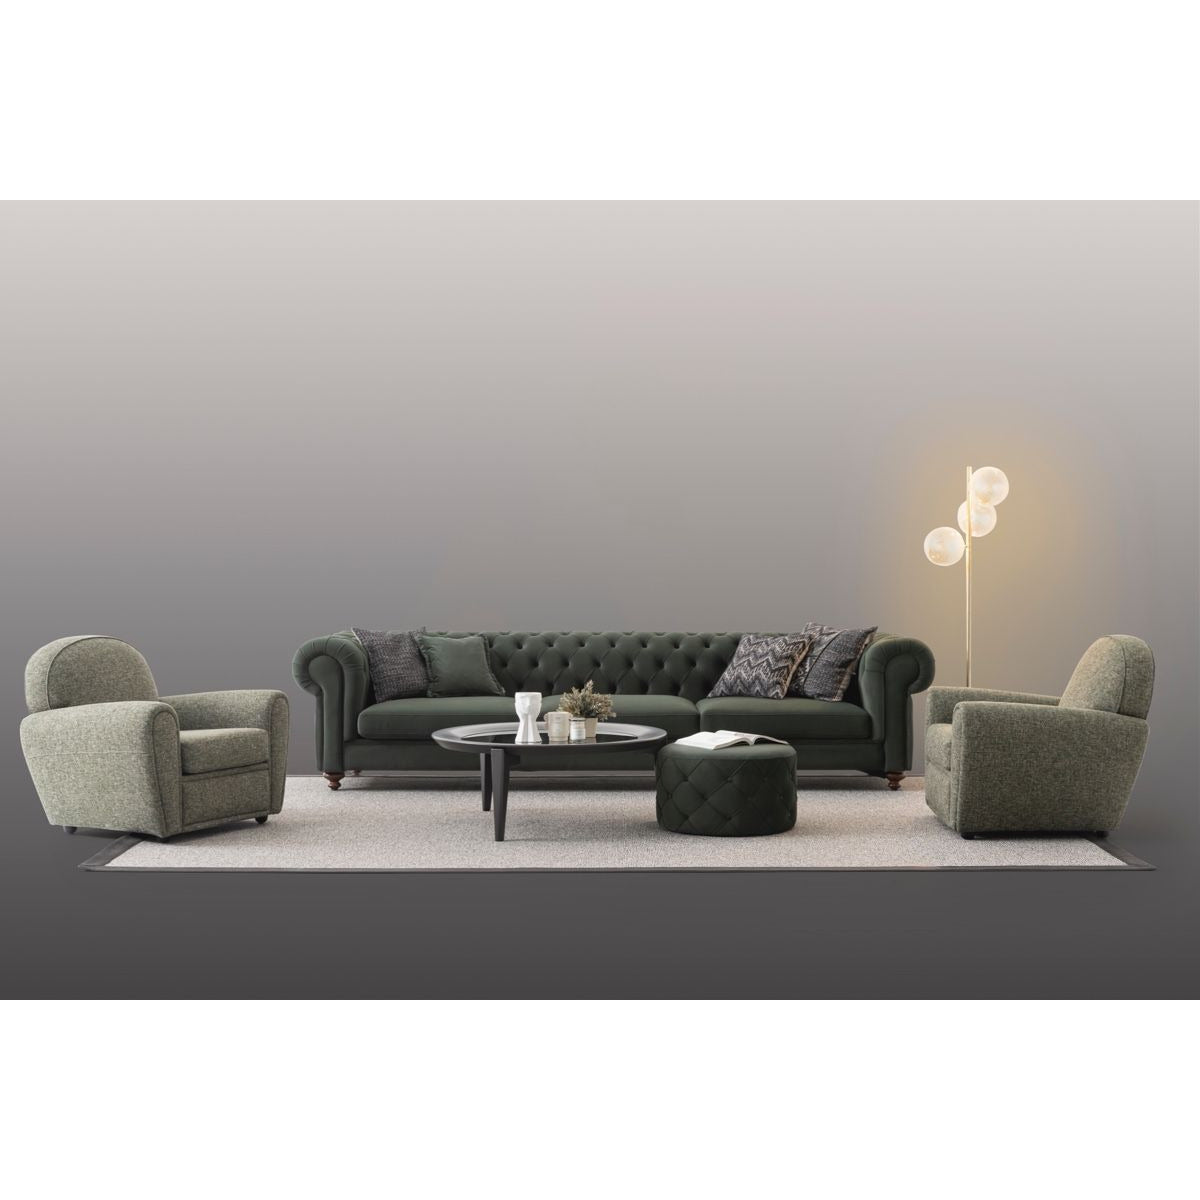 Aspendos Fåtölj - LINE Furniture Group